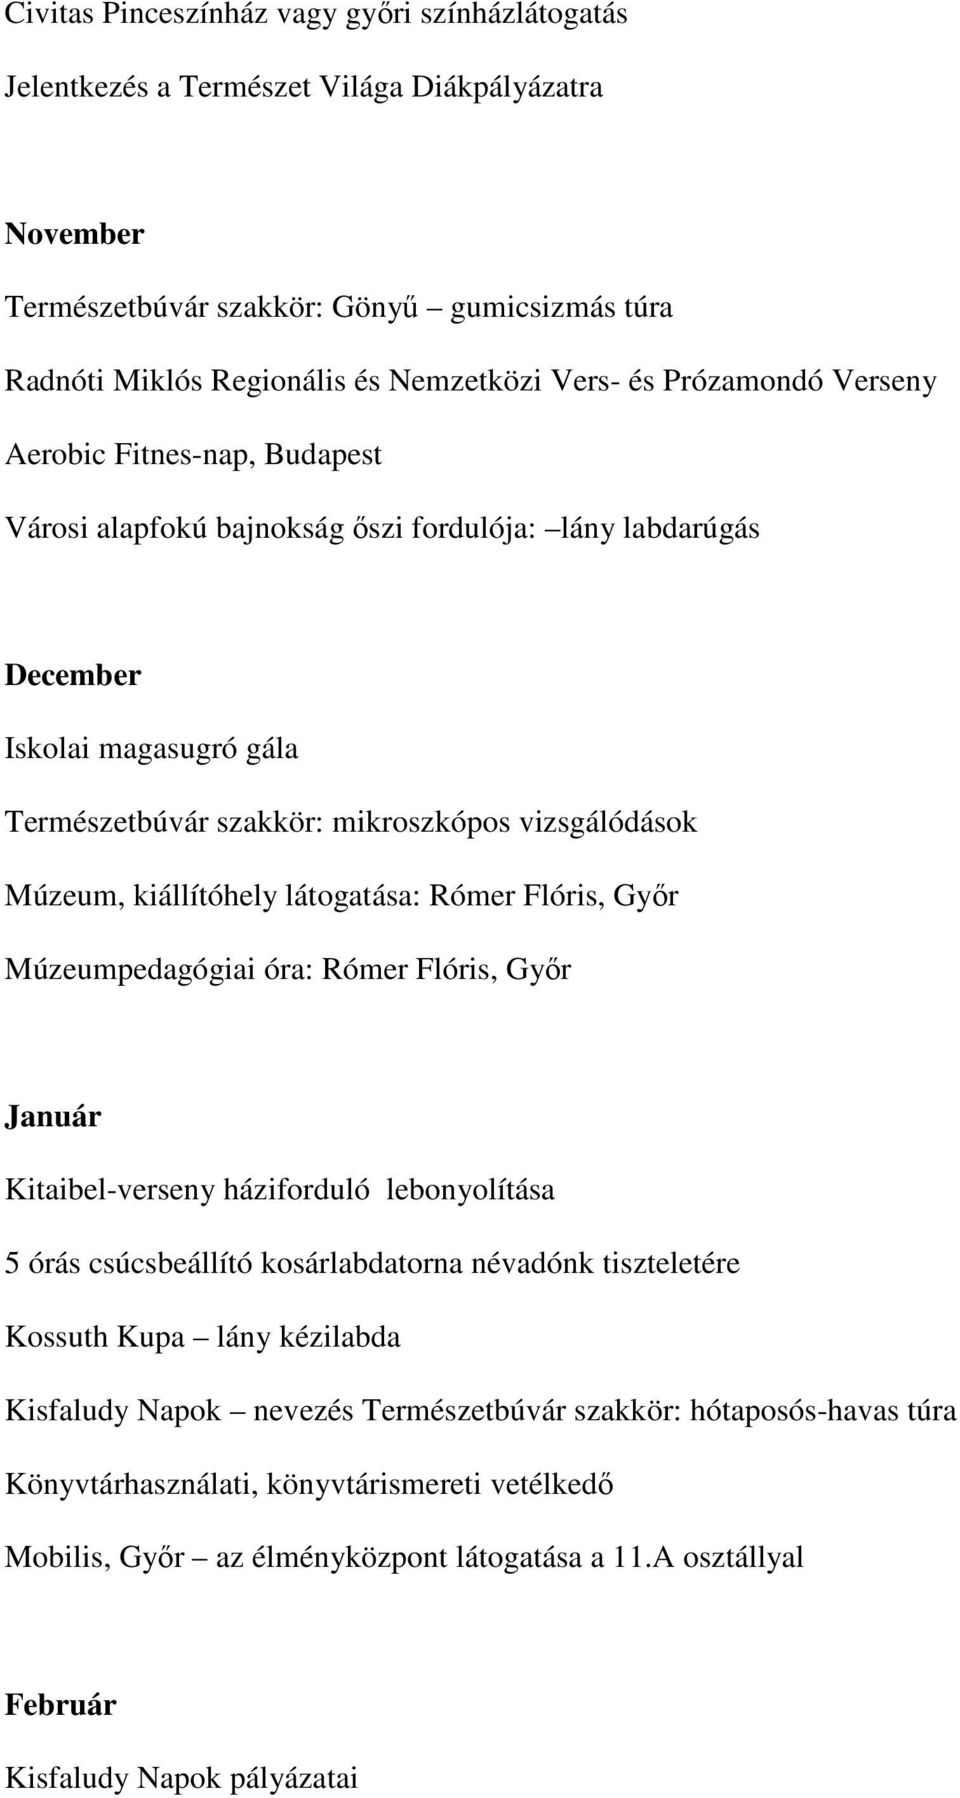 kiállítóhely látogatása: Rómer Flóris, Győr Múzeumpedagógiai óra: Rómer Flóris, Győr Január Kitaibel-verseny háziforduló lebonyolítása 5 órás csúcsbeállító kosárlabdatorna névadónk tiszteletére